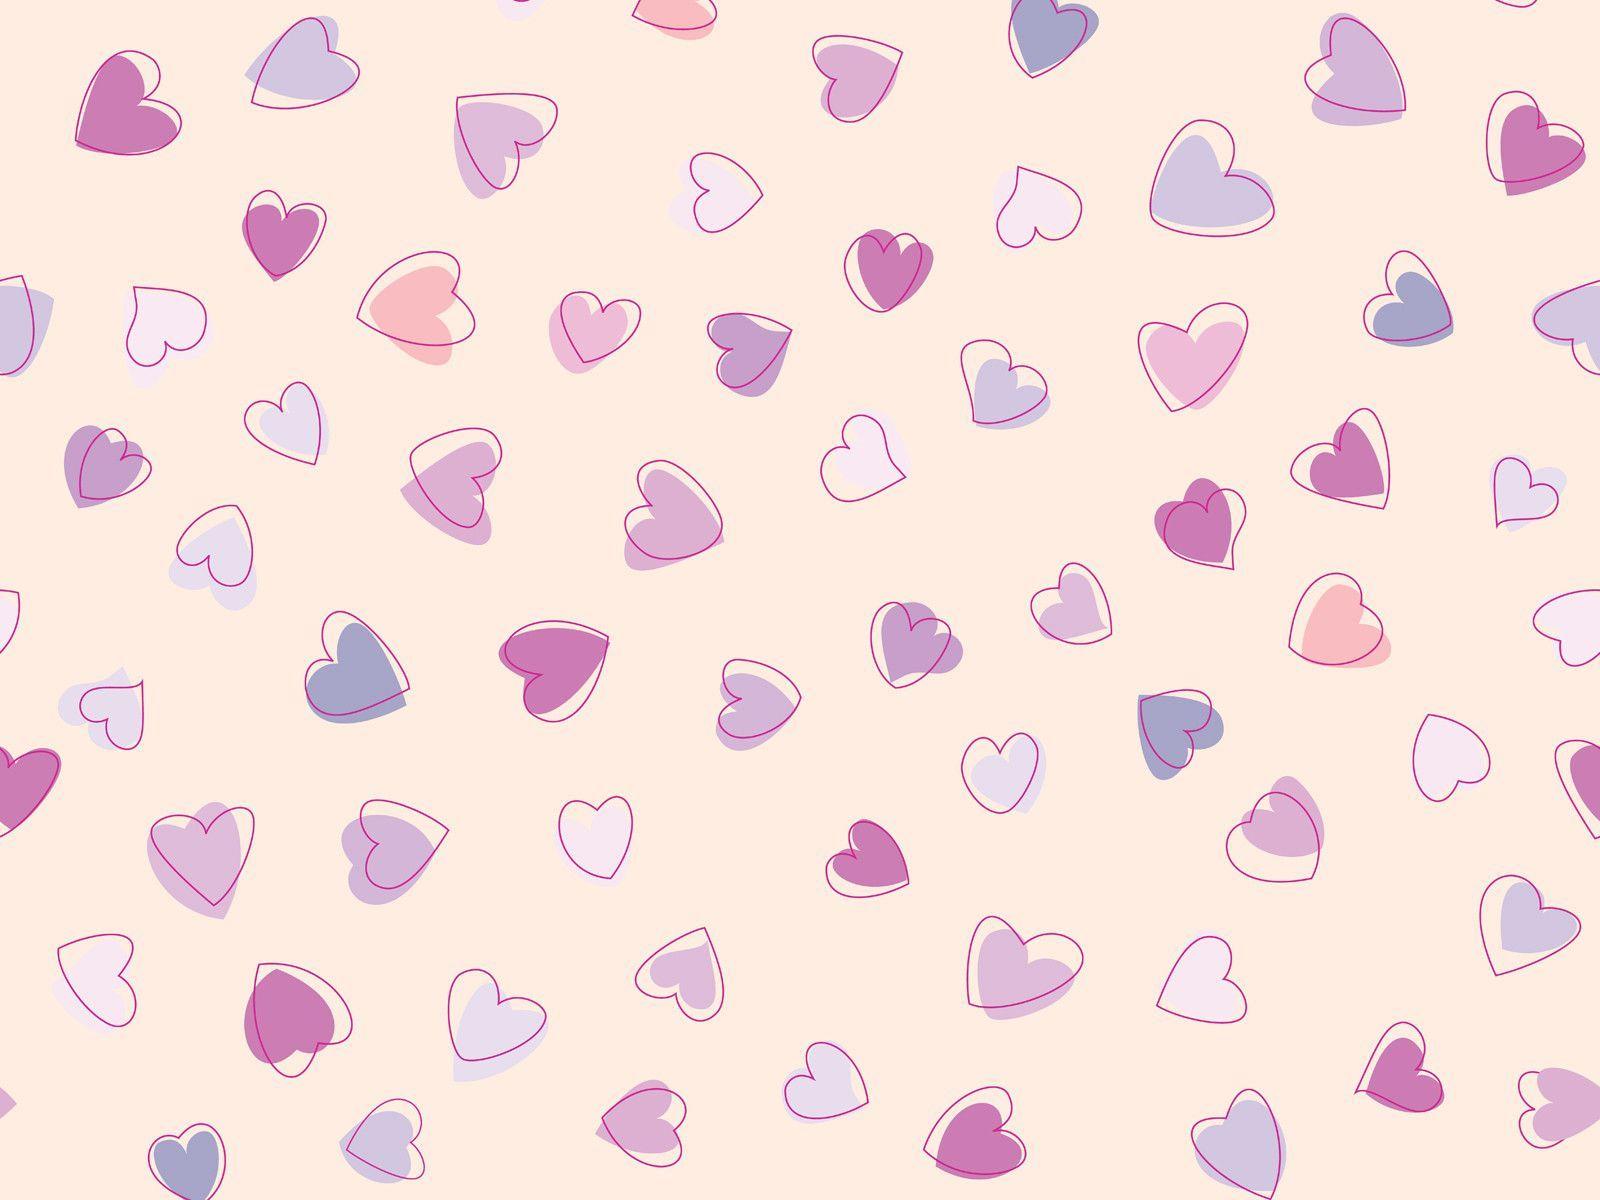 Cute Heart Love Pattern Wallpaper. Foolhardi